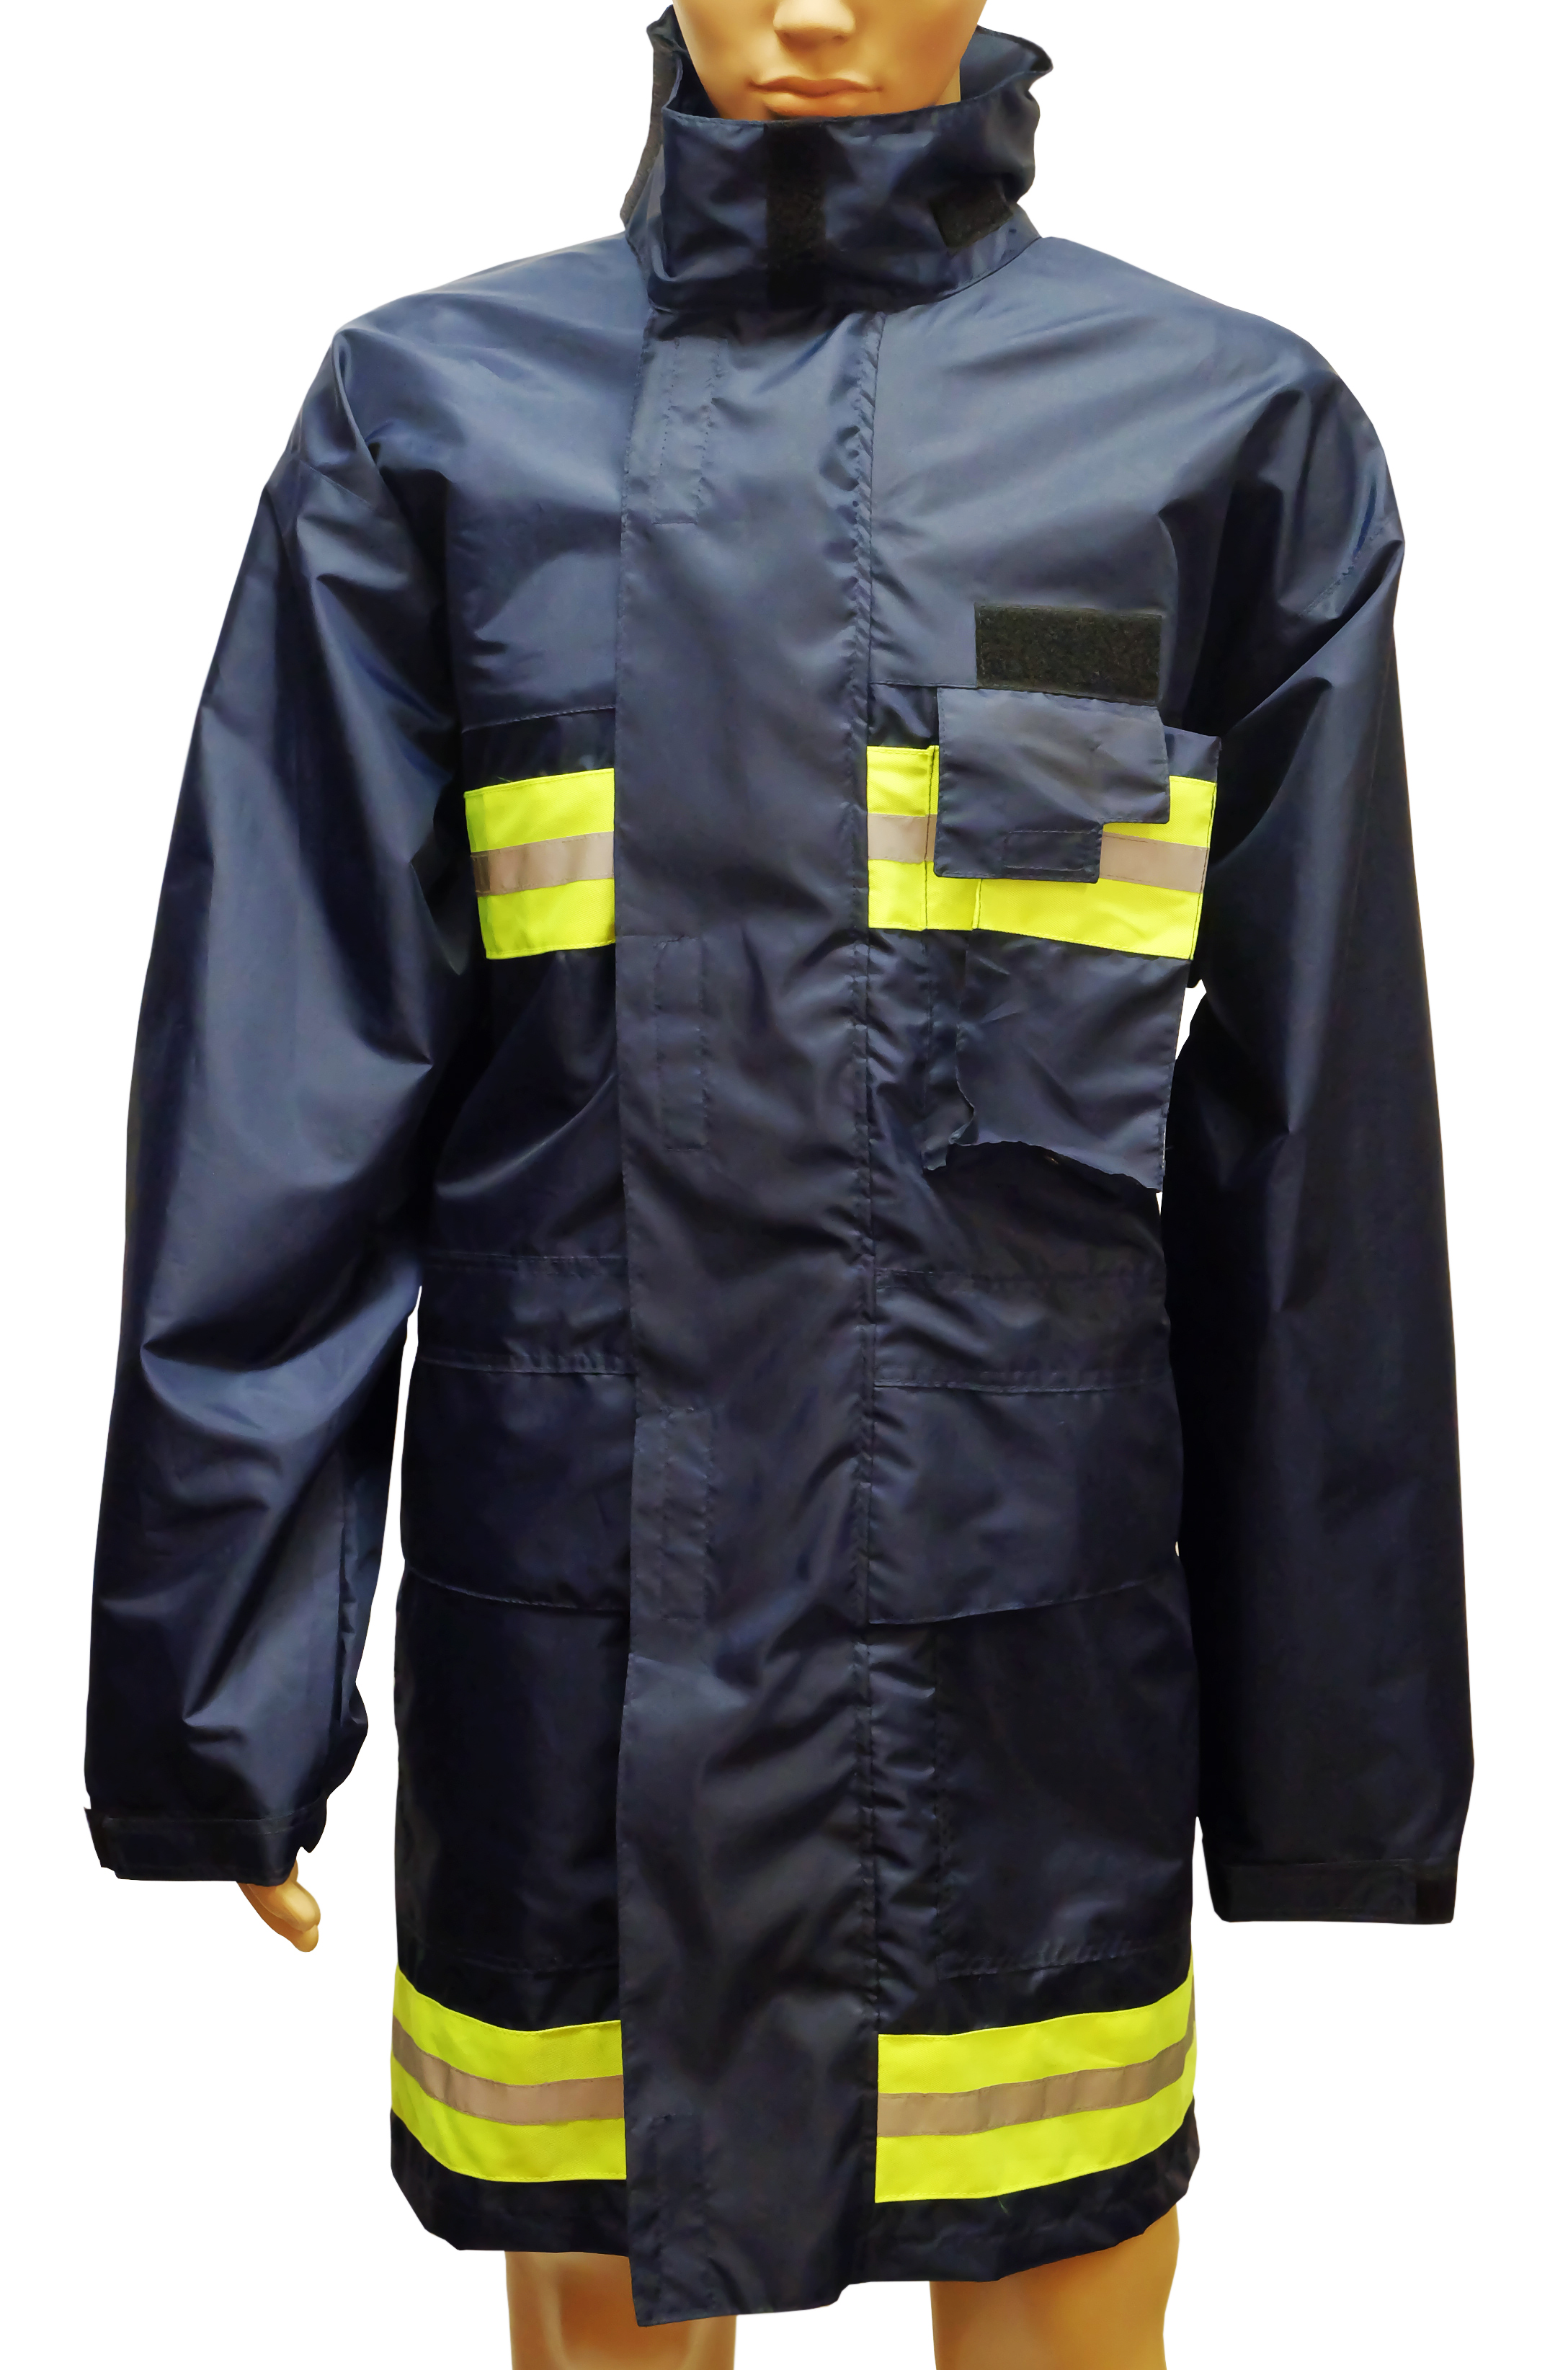 Pláštěnka pro hasiče, vč. nápisu HASIČI, reflexních pásků a kapsou na radiostanici